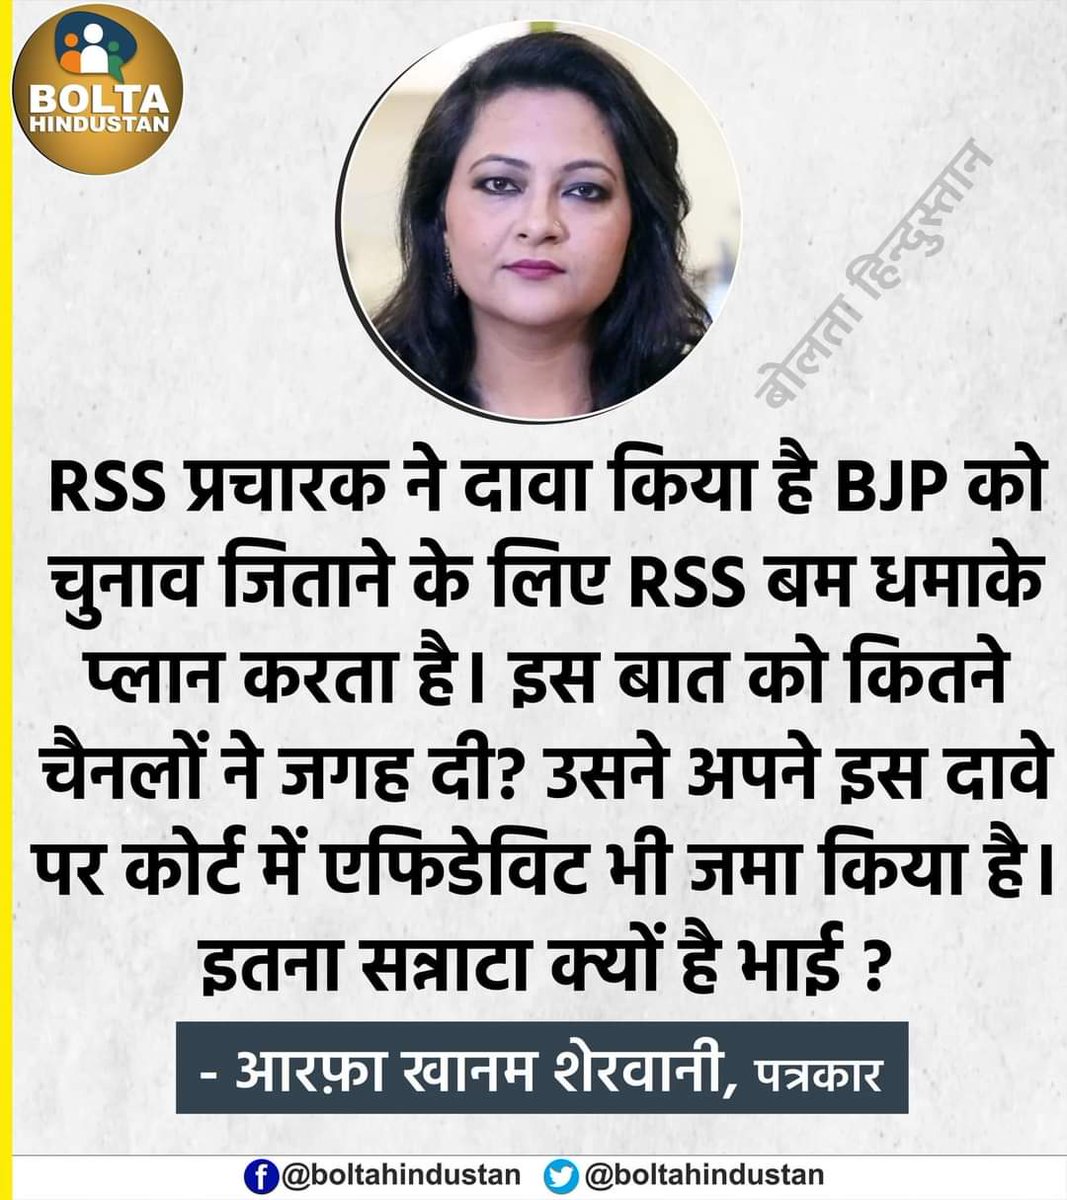 'RSS प्रचारक ने दावा किया है BJP को चुनाव जिताने के लिए RSS बम धमाके प्लान करता है। इस बात को कितने चैनलों ने जगह दी?' : आरफ़ा खानम @ARajesh_SP @BrajeshYadavSP @uttamyadava @RajeevRai @kailashnathsp @YunusKh55637397 @SaumyLive @Anu57318631